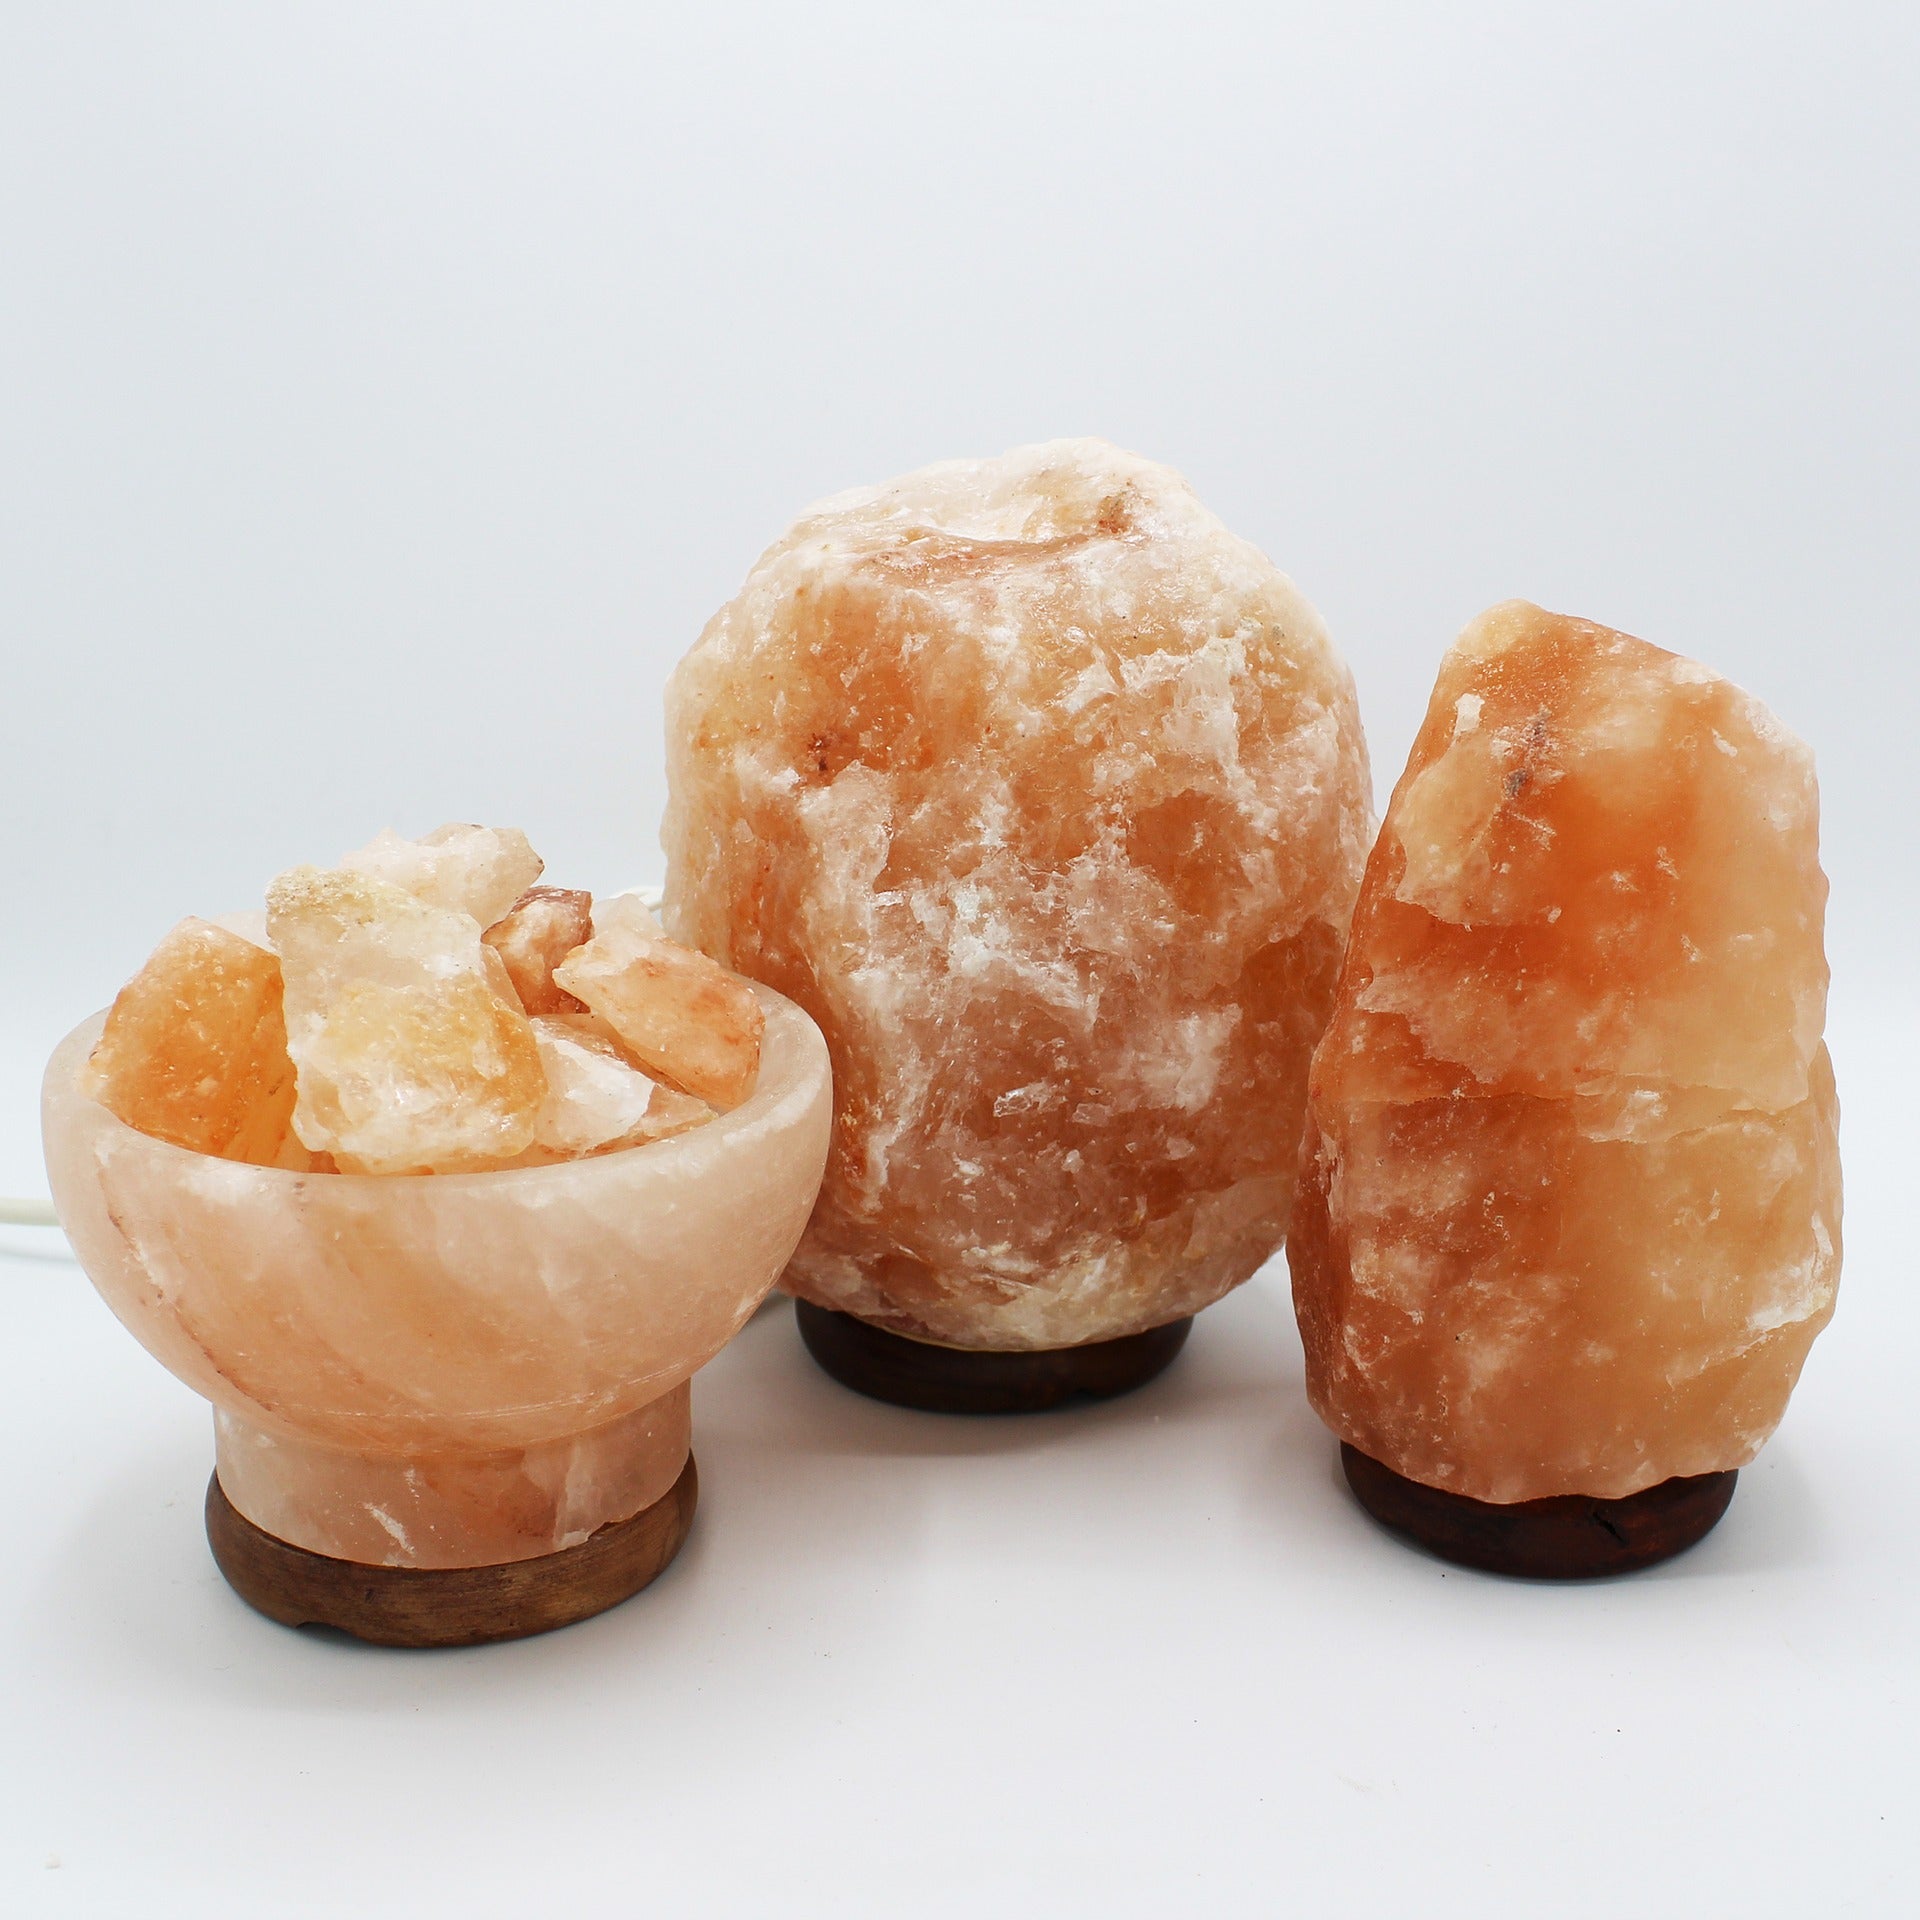 Qué es una piedra de sal y para qué sirve? – SAL ROCHE